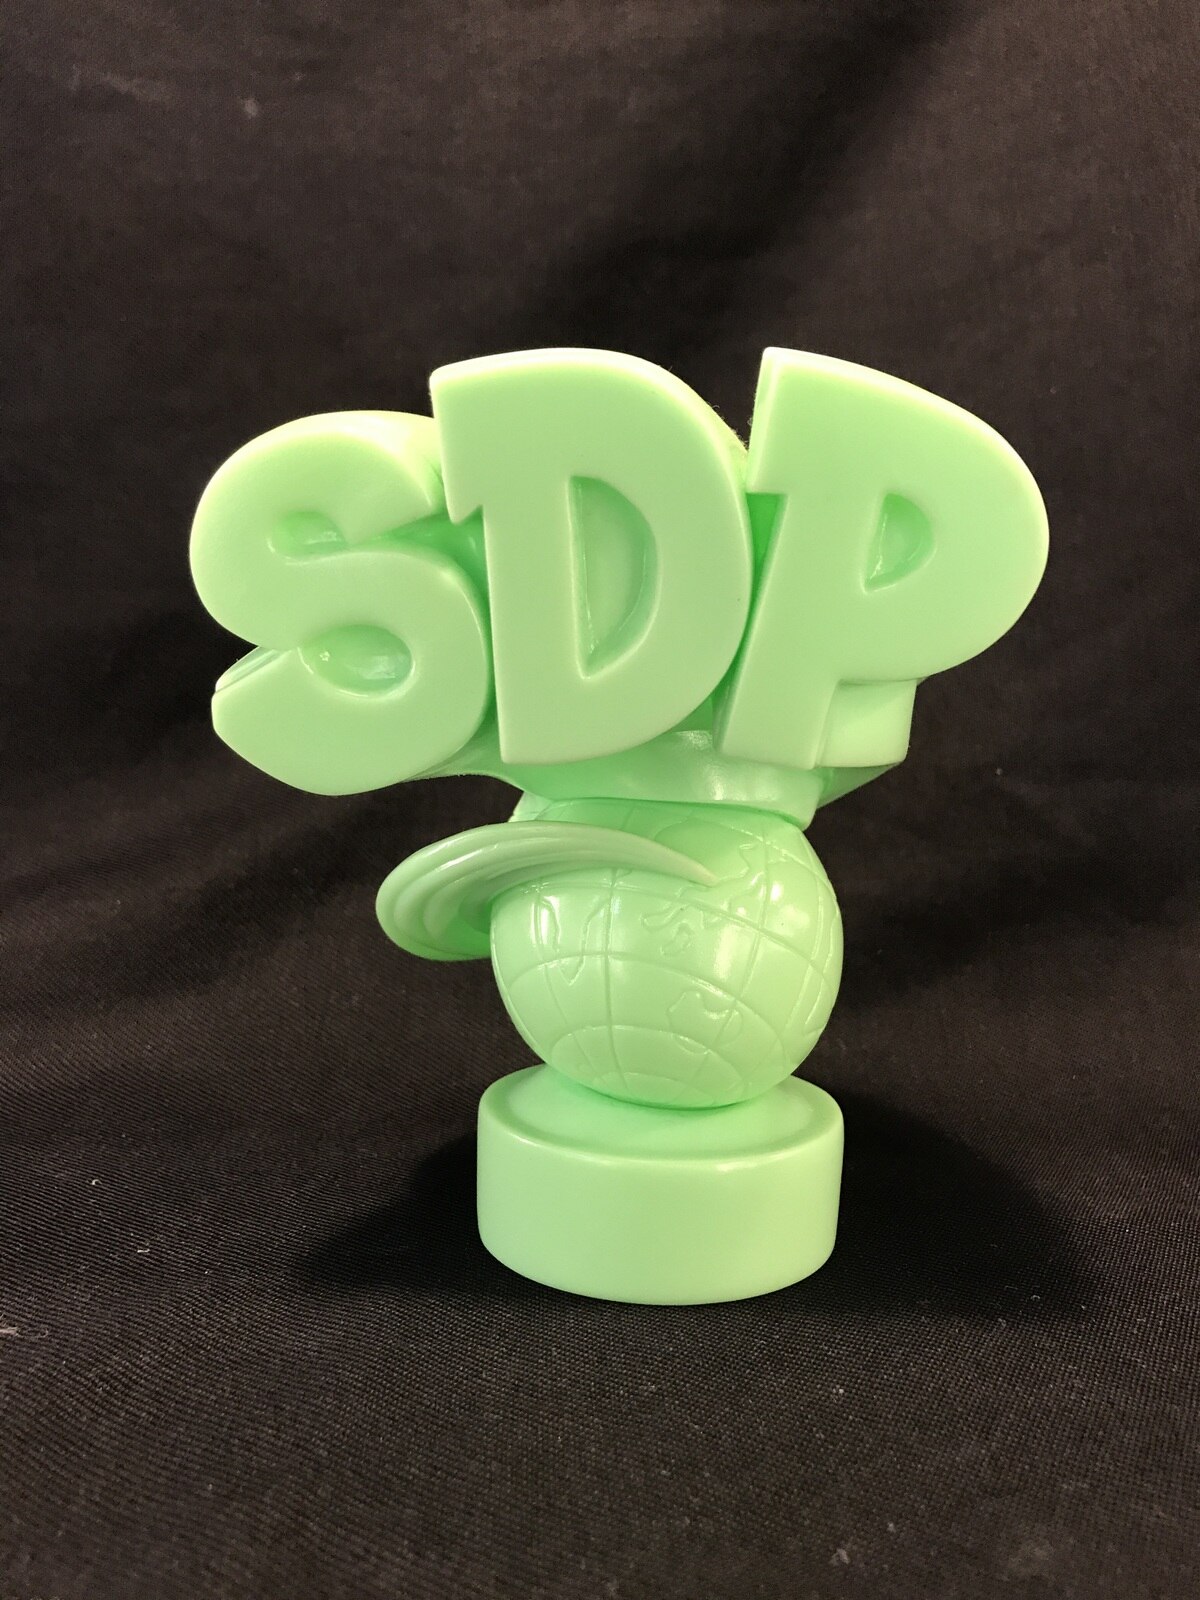 メロディフェア TOYFUL スチャダラパー 3Dロゴマーク 黄緑成型